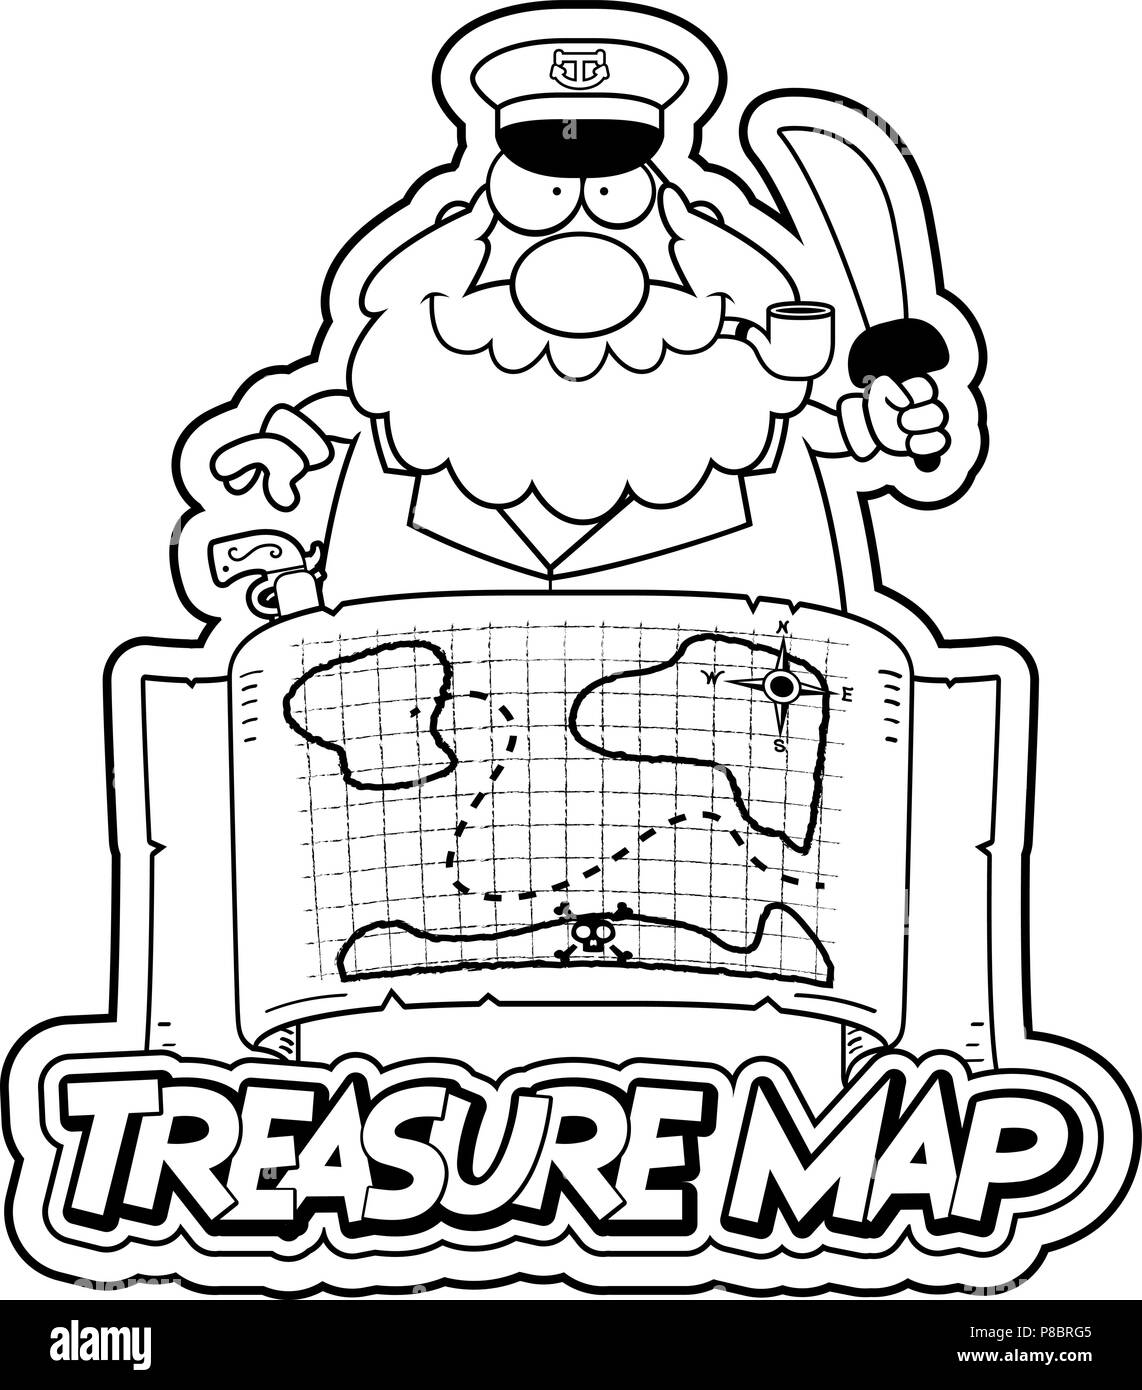 Illustration d'une caricature d'un capitaine avec une carte au trésor la carte au trésor et de texte. Illustration de Vecteur